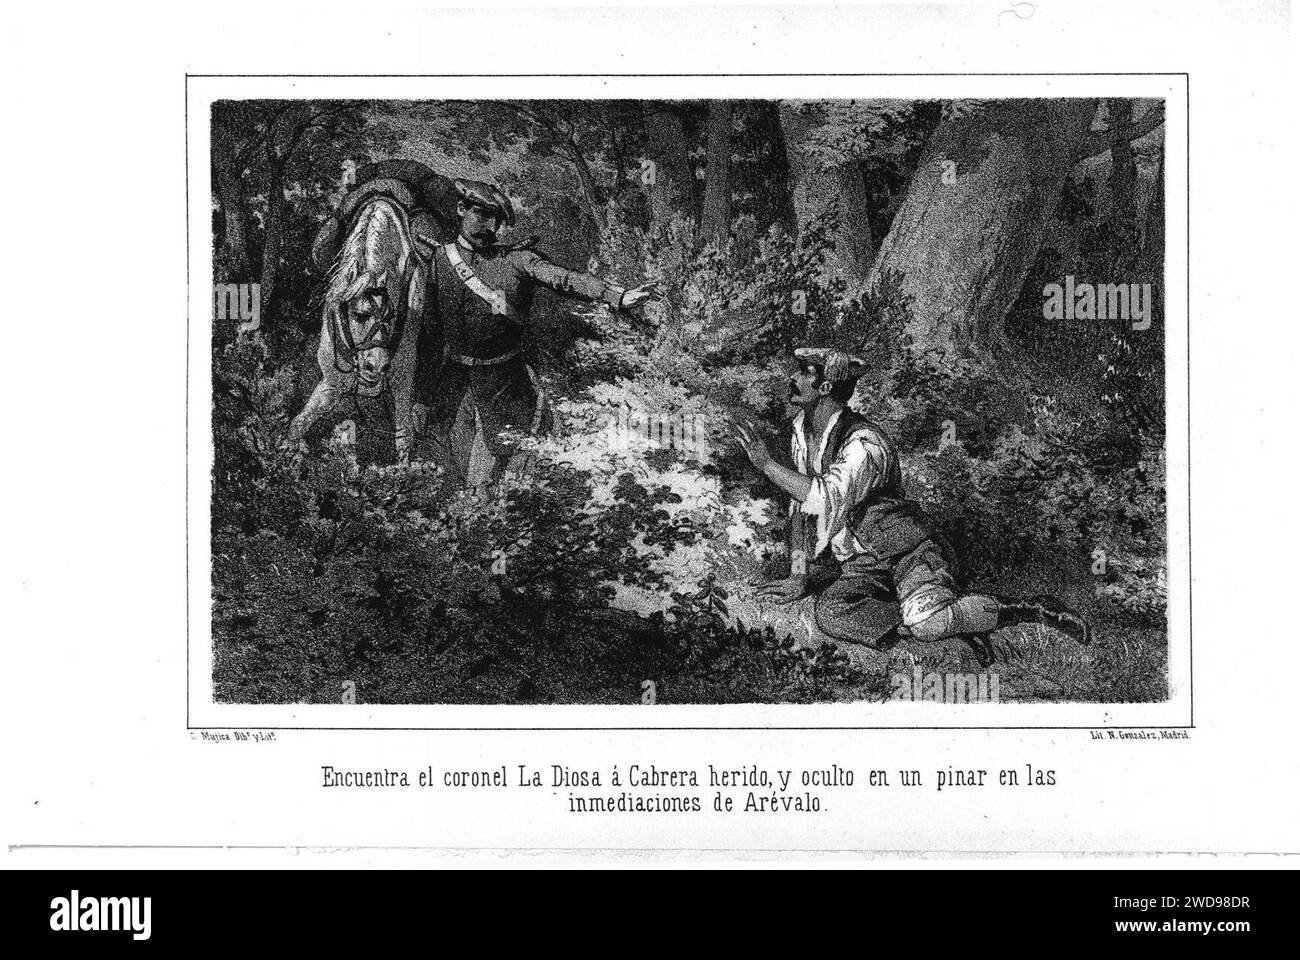 1871-1872, La estafeta de palacio (historia del último reinado), Encuentra el coronel La Diosa á Cabrera herido, y oculto en un pinar en las inmediaciones de Arévalo. Stock Photo